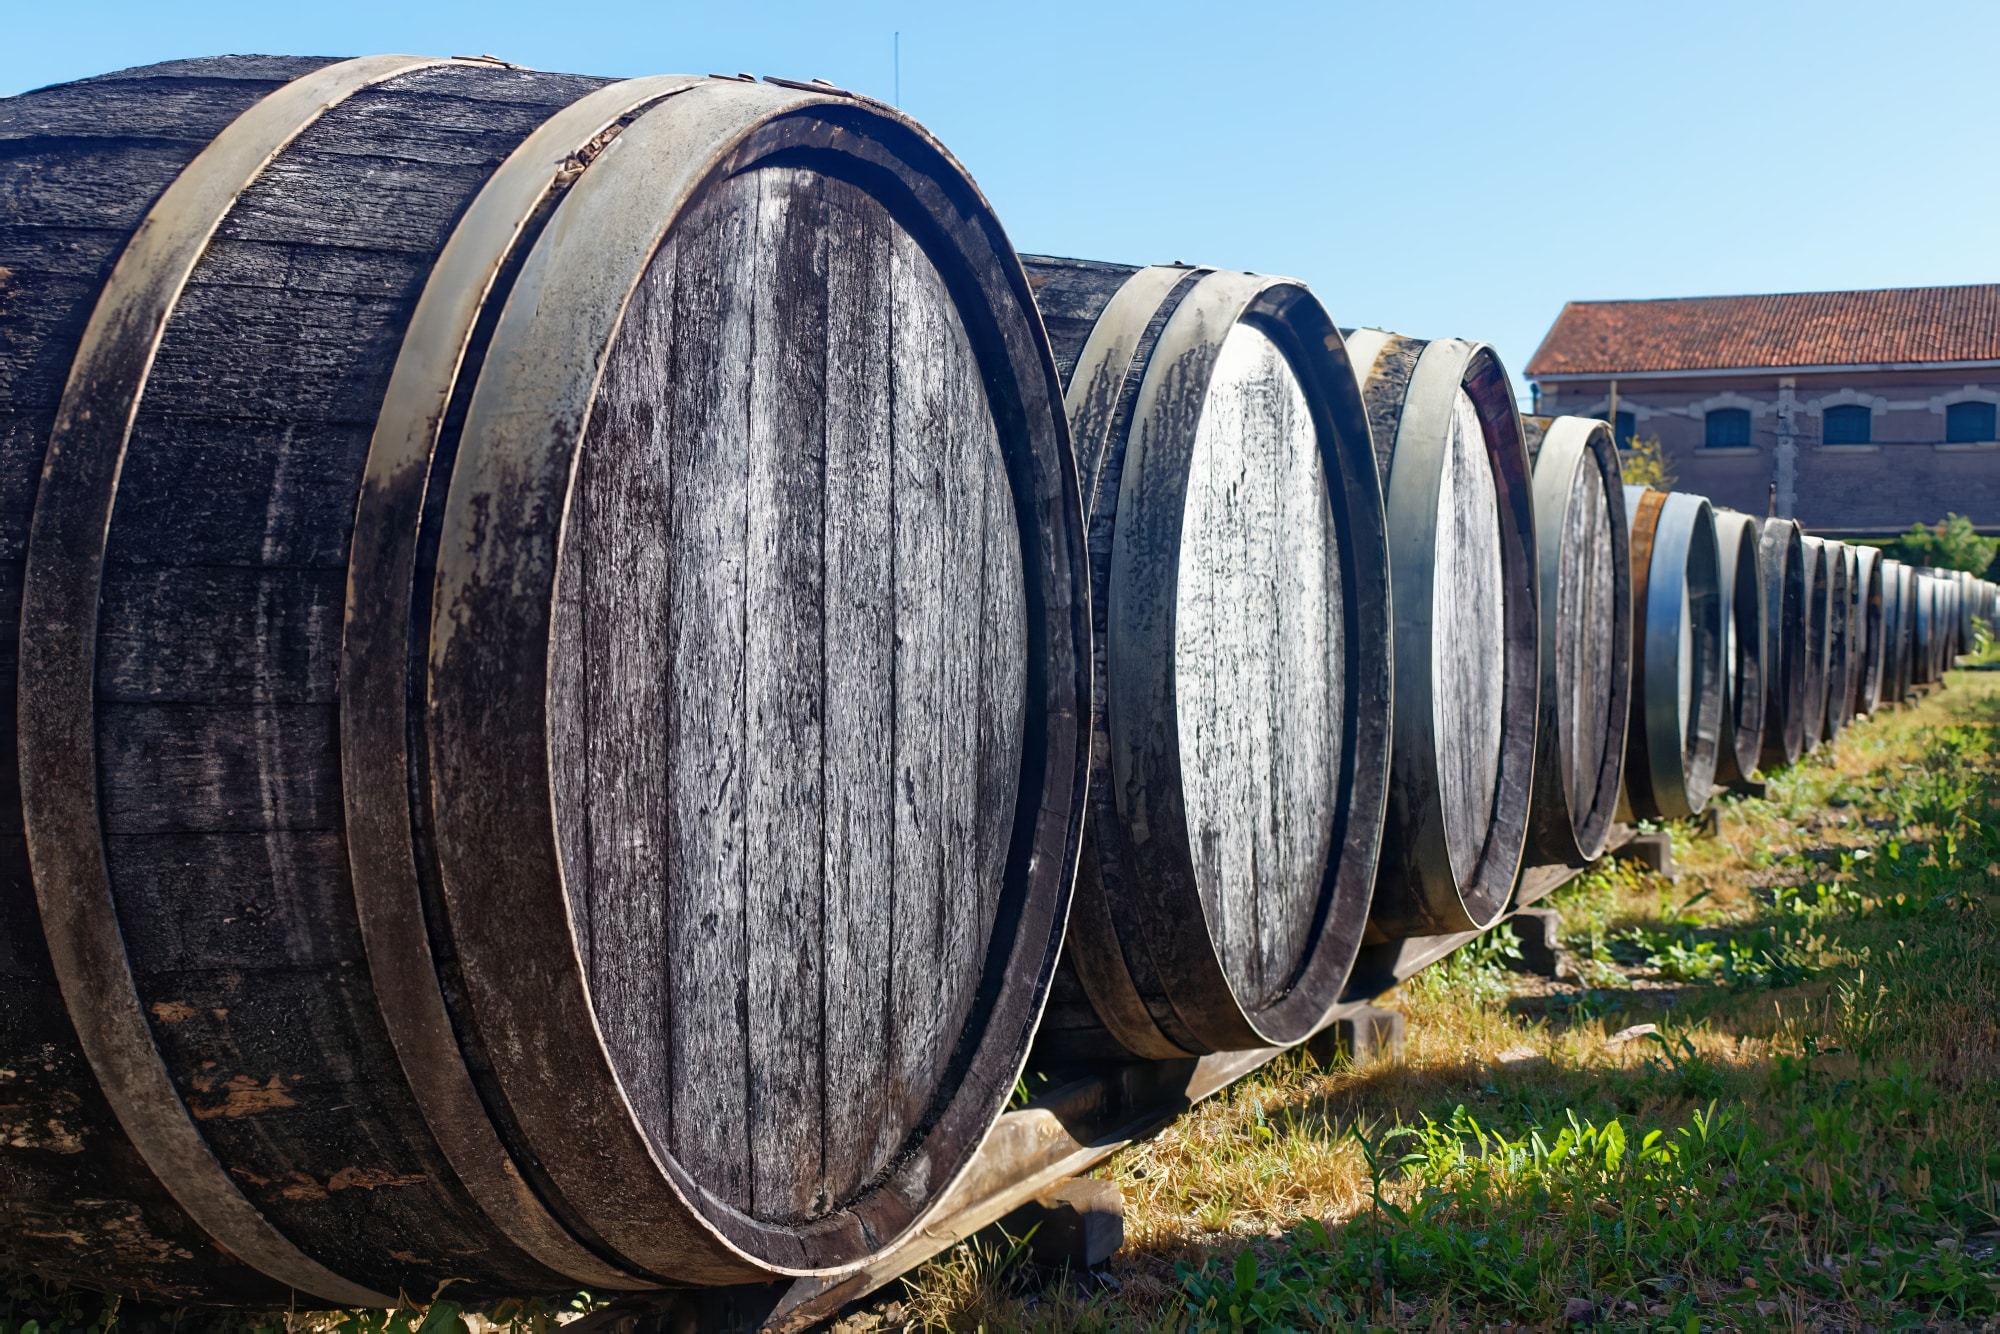 Vieux tonneaux de chêne en extérieur, visiter les vignobles de l'Armagnac.